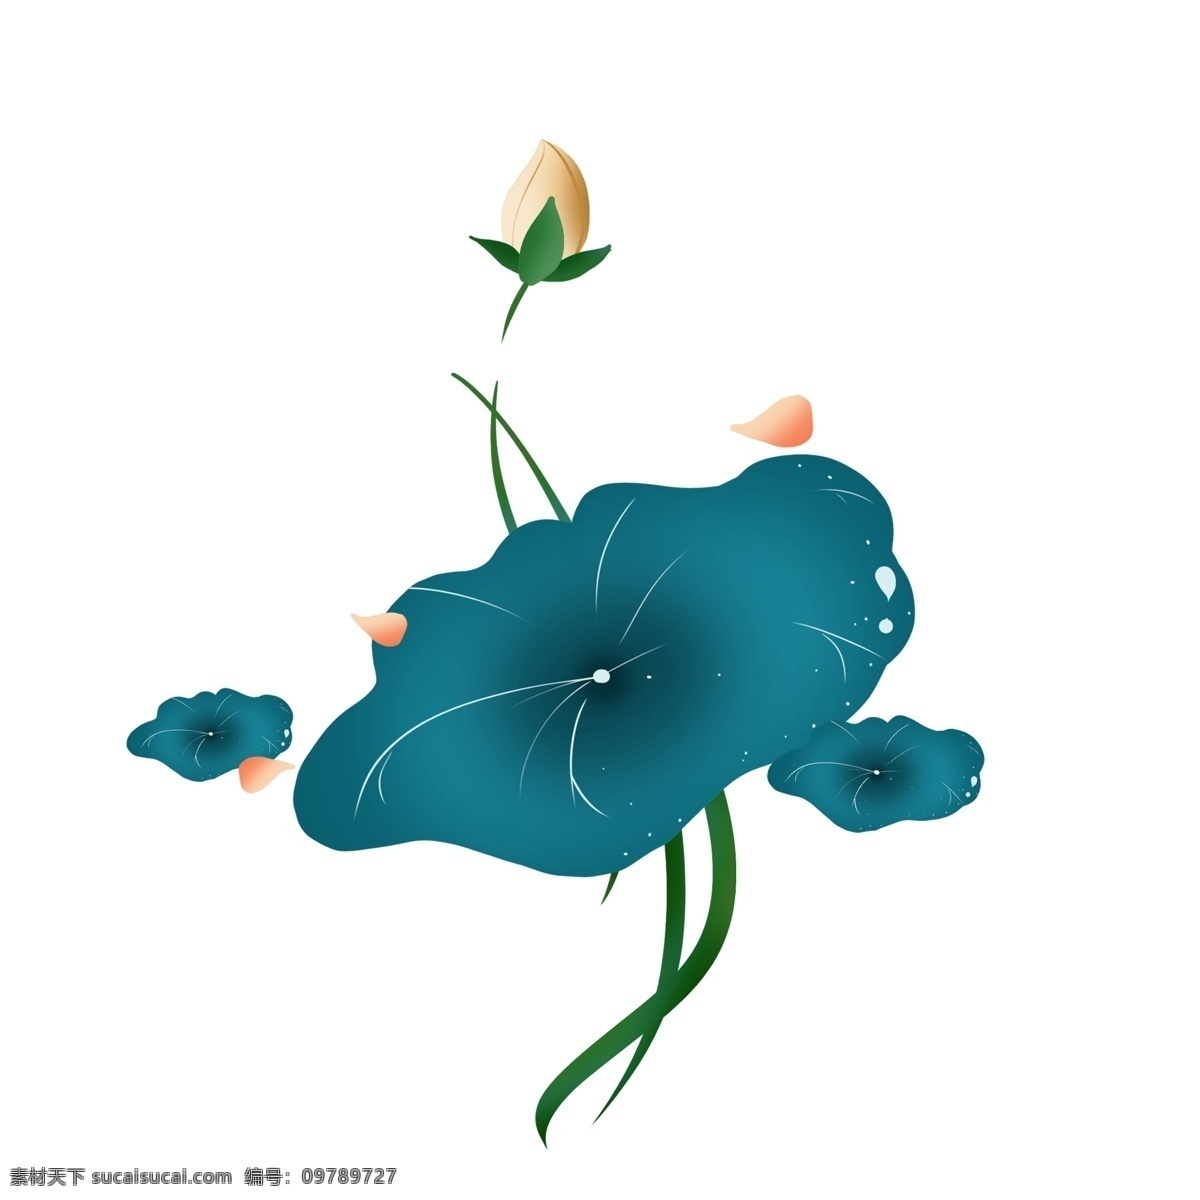 创意 蓝色 荷花 插画 蓝色的荷叶 创意植物插画 唯美的荷花 卡通植物插画 盛开的荷花 荷花插画